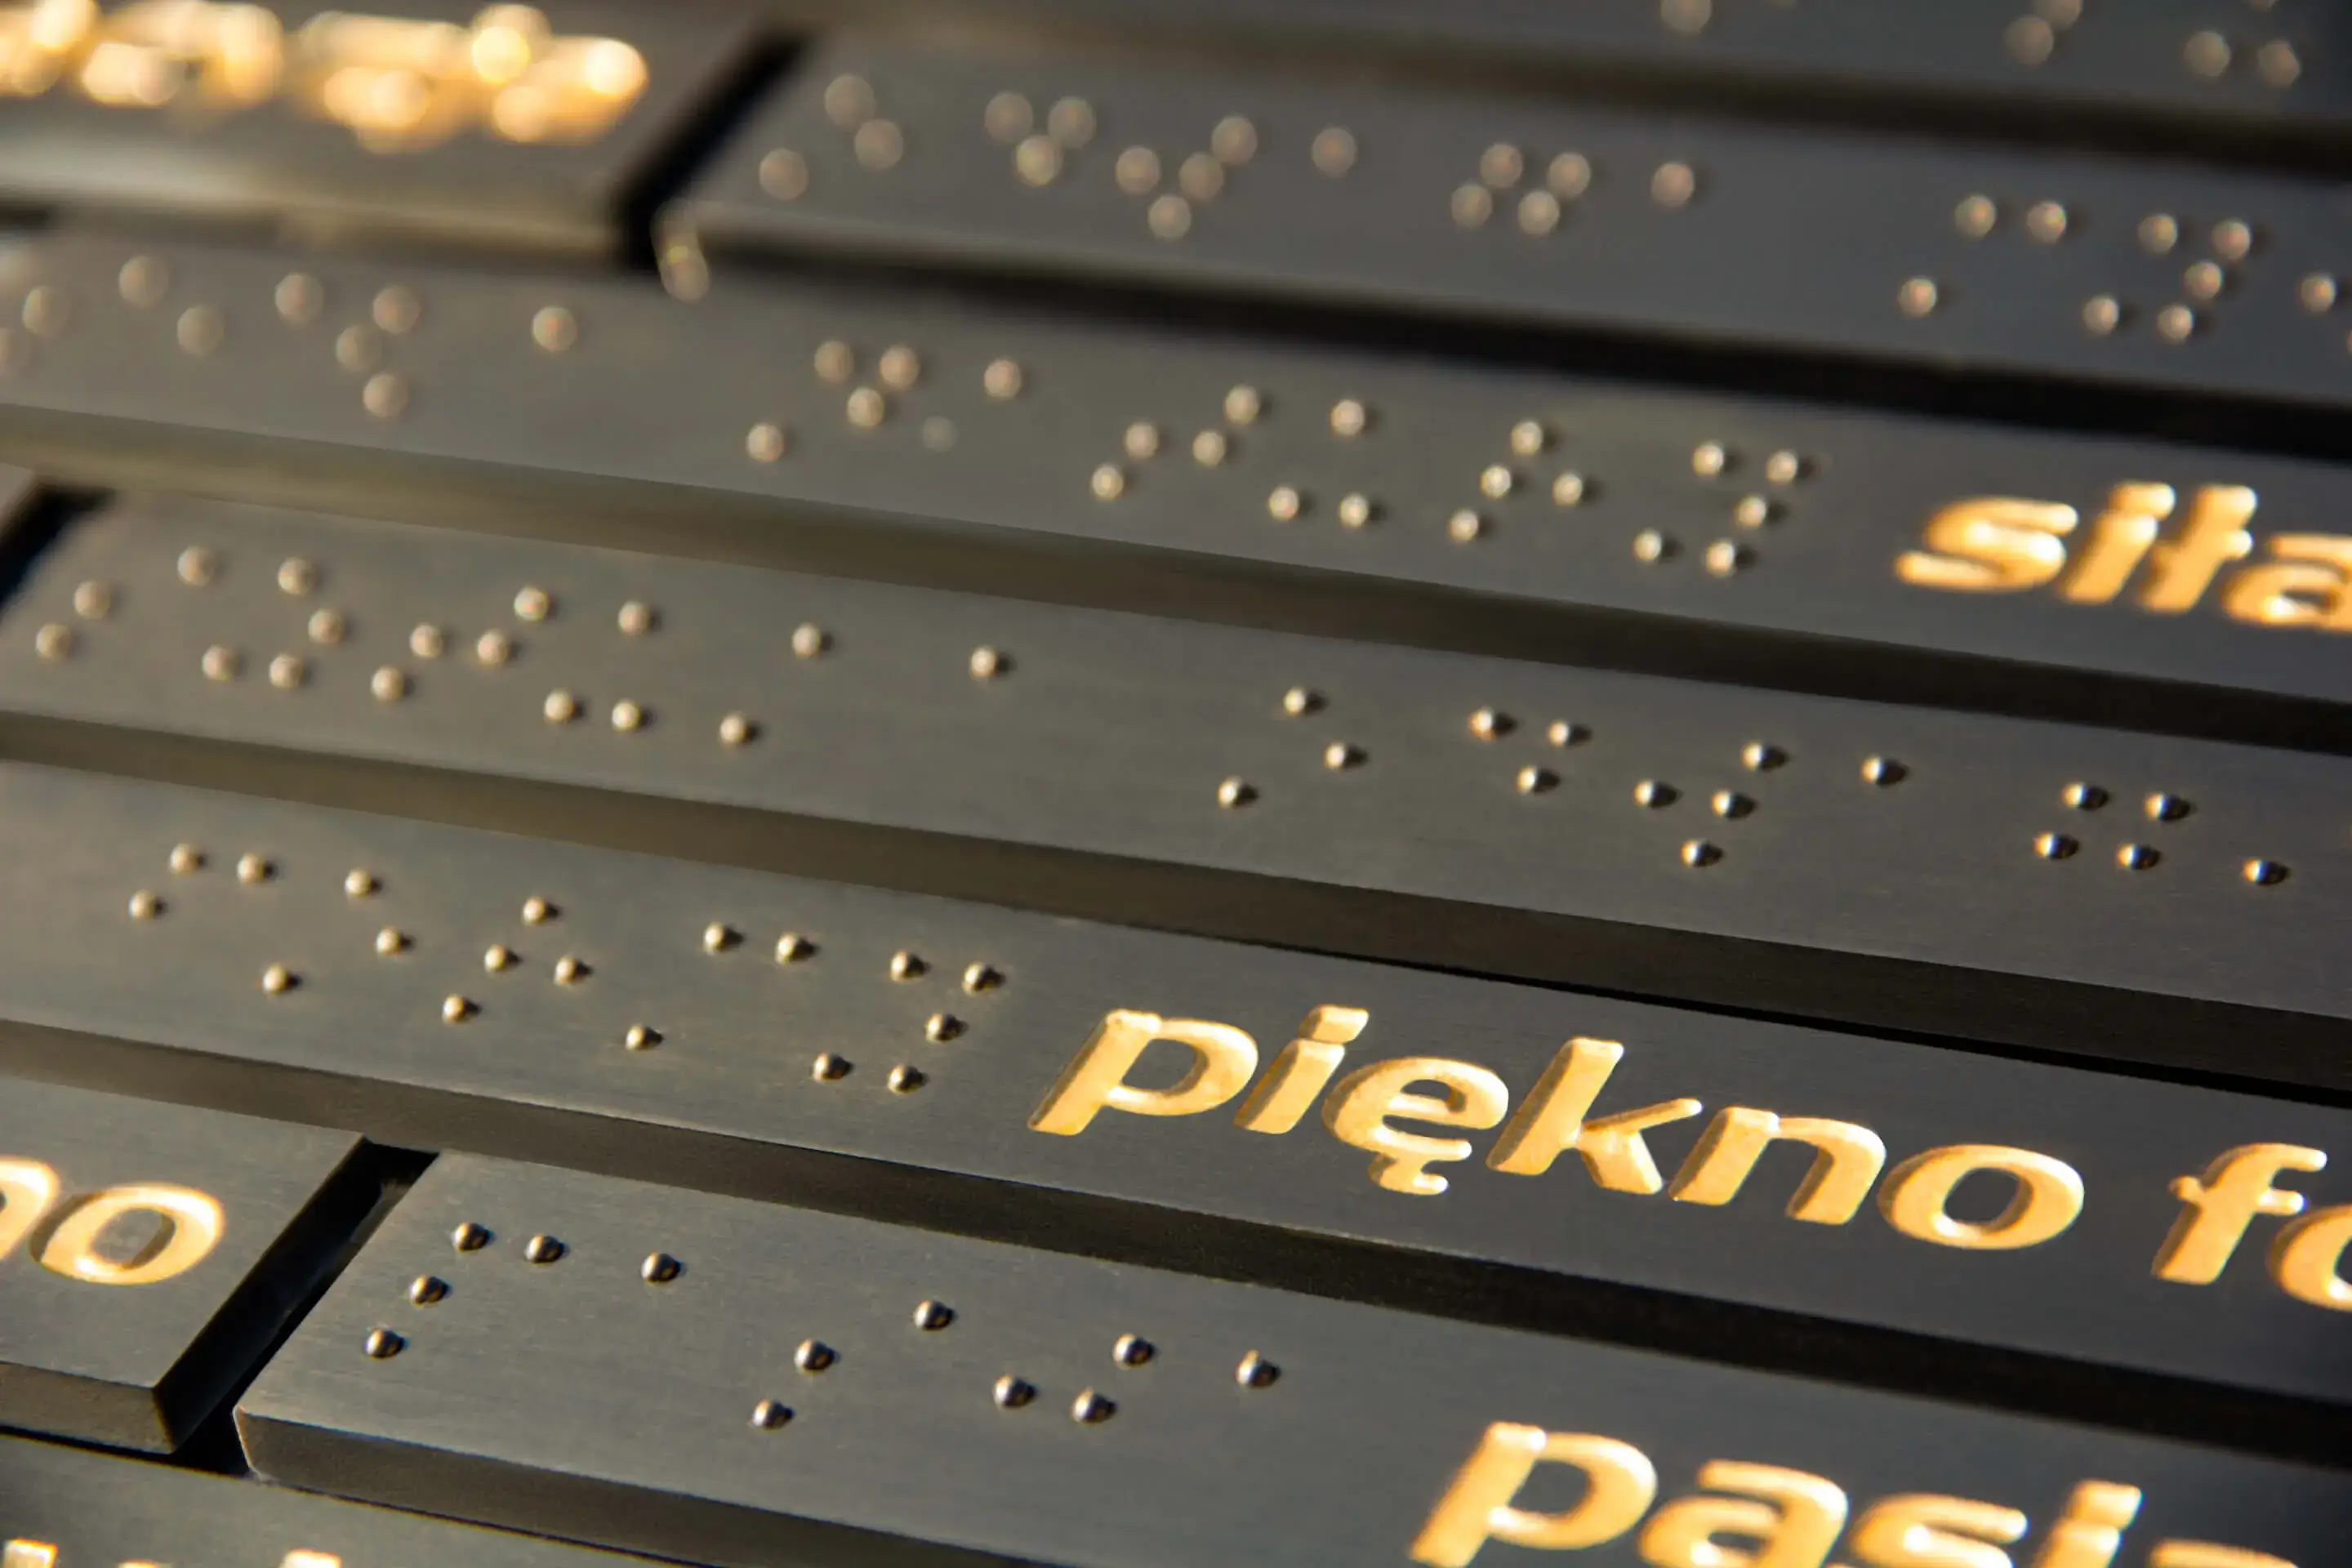 Tabliczka informacyjna - złote litery na czarnej tabliczce oraz zapis alfabetem Braille’a